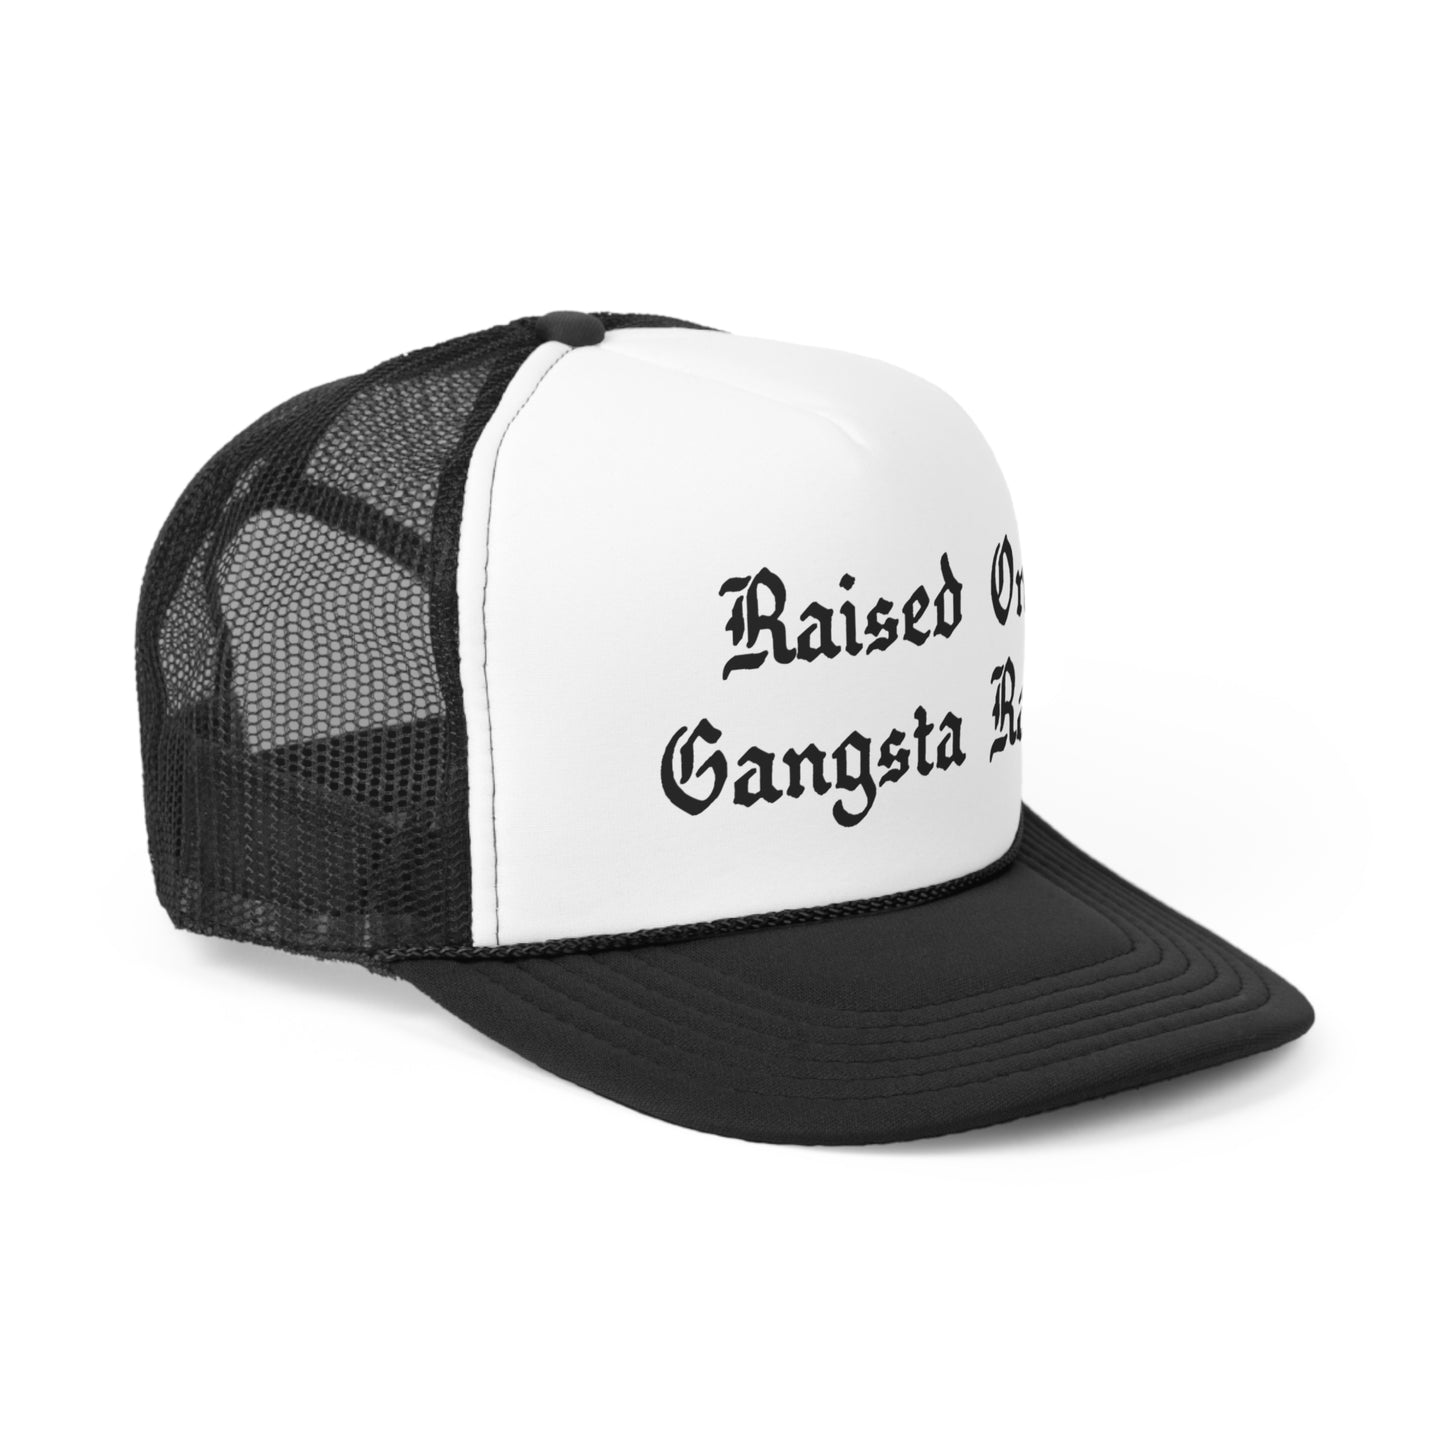 Raised on Gangsta Rap Snapback Trucker Hat Great gift for a Gangsta Hip-Hop & Rap Lover Hat, Rap Hat